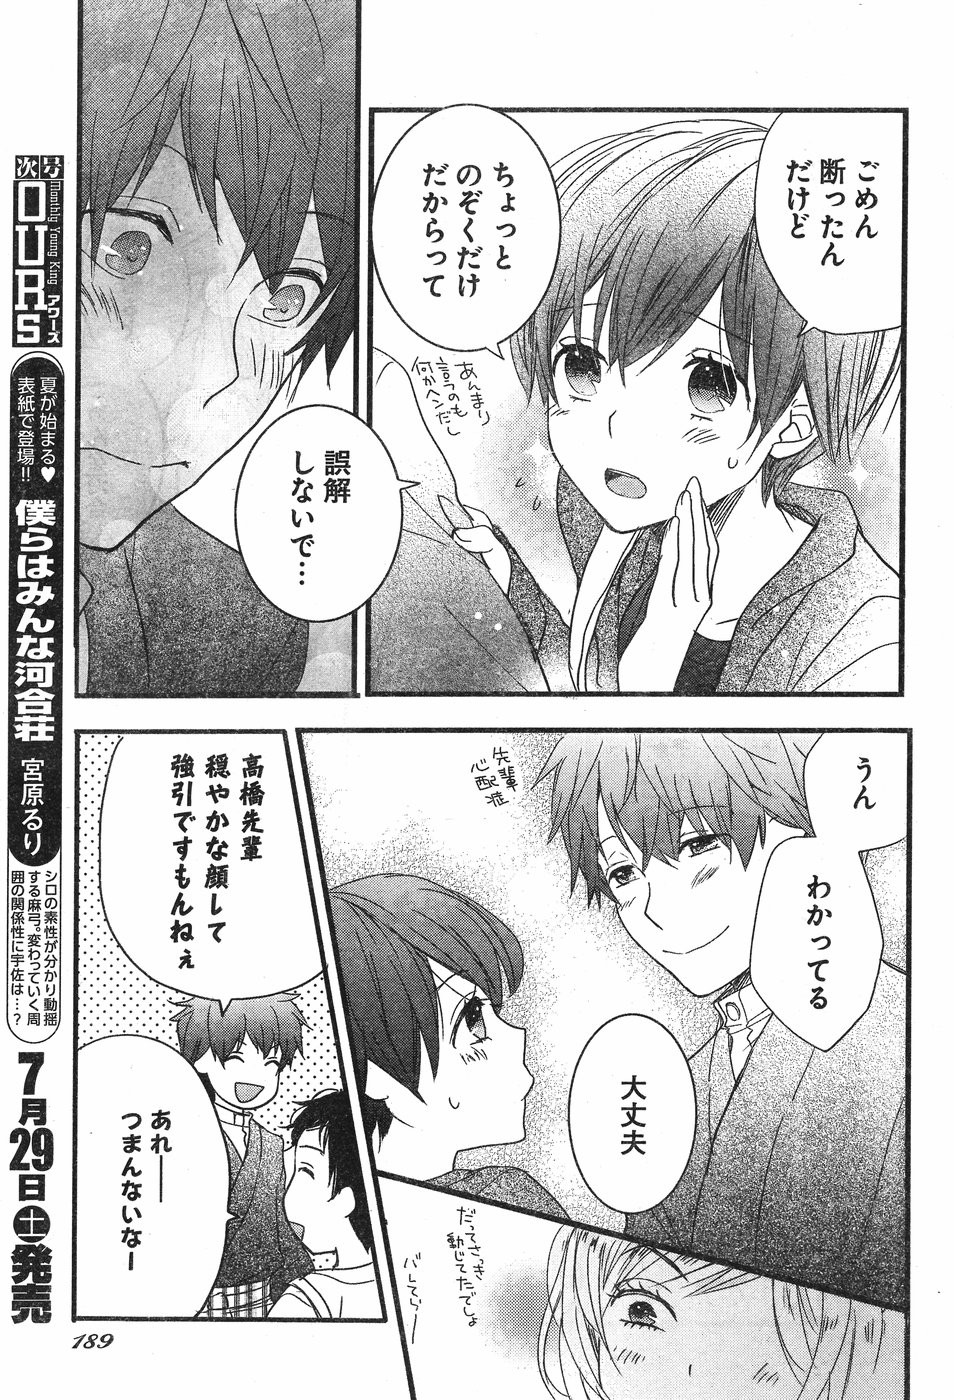 Bokura wa Minna Kawaisou - Chapter 84 - Page 17